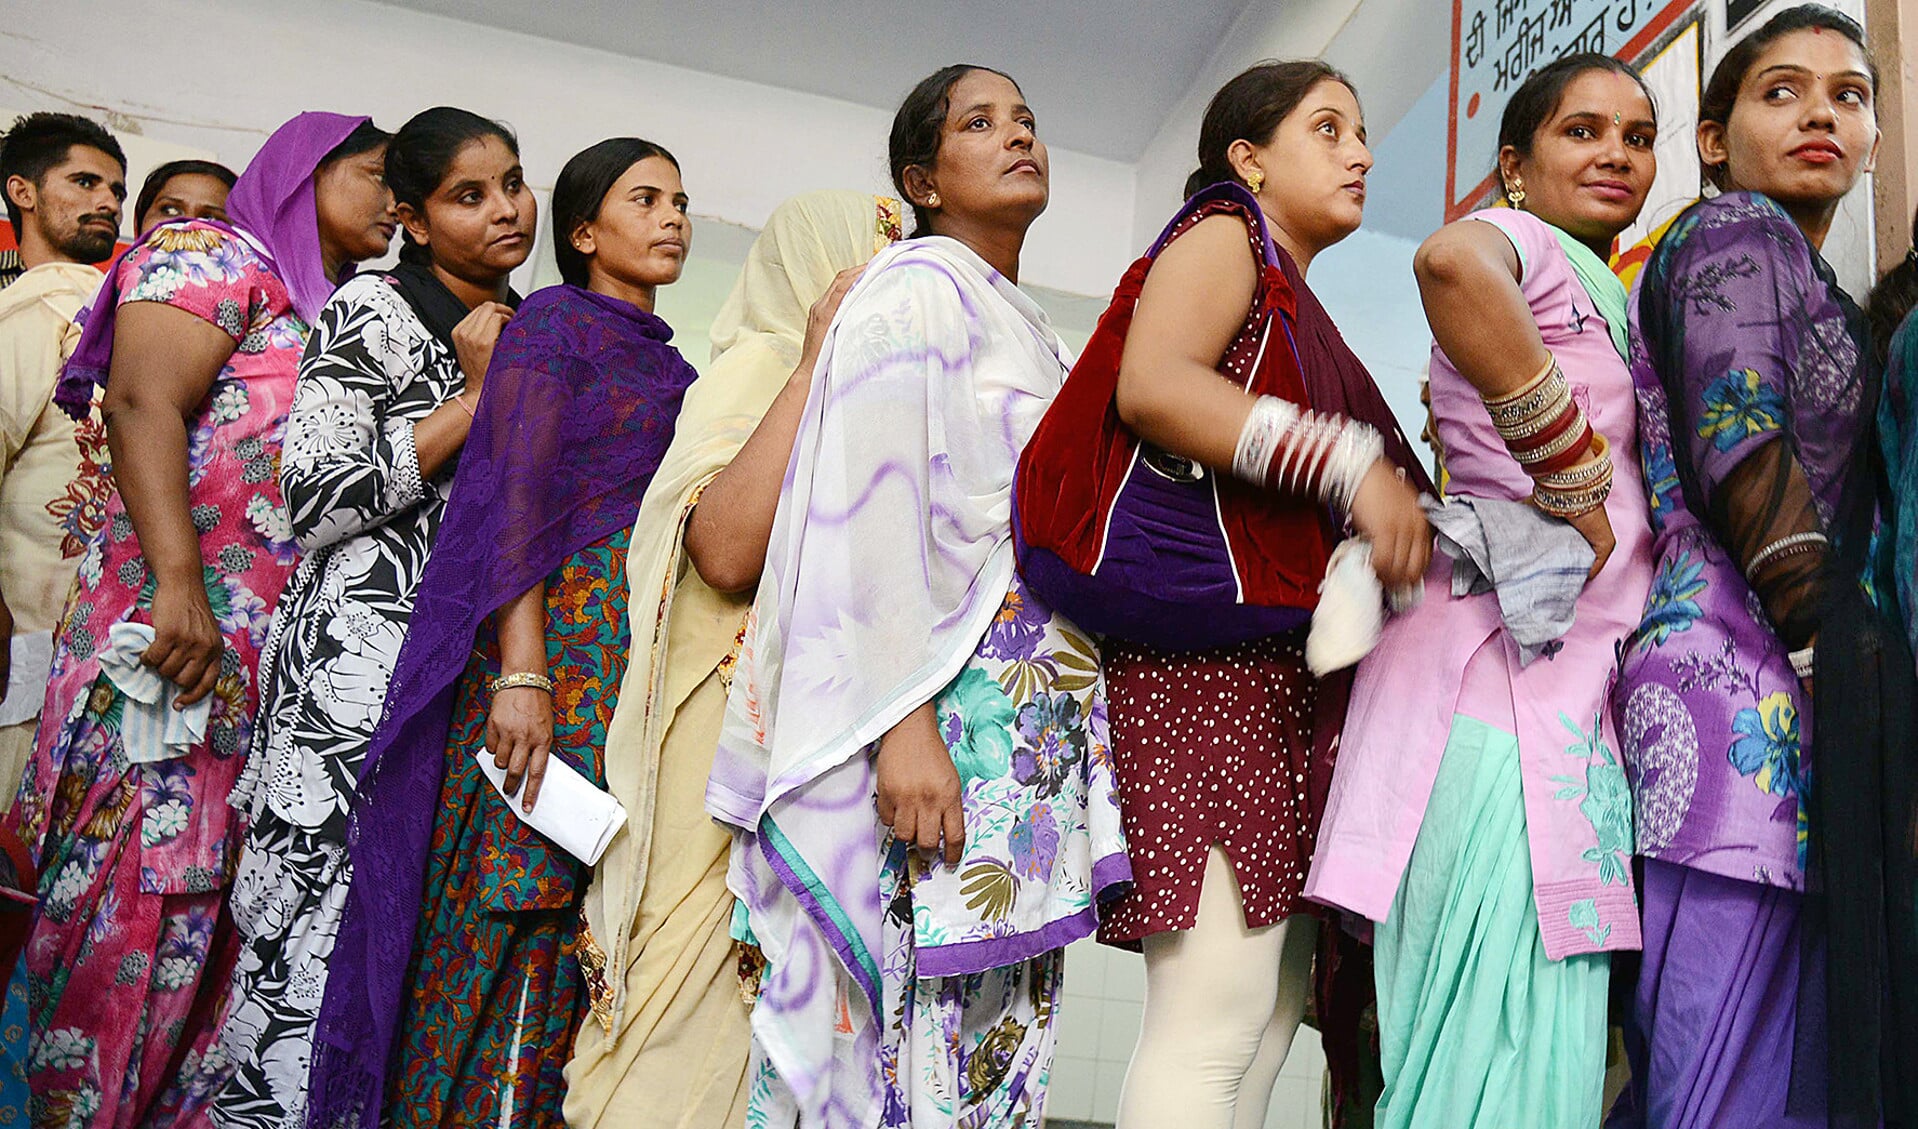 In India worden jonge vrouwen onder druk gezet om draagmoeder te worden.